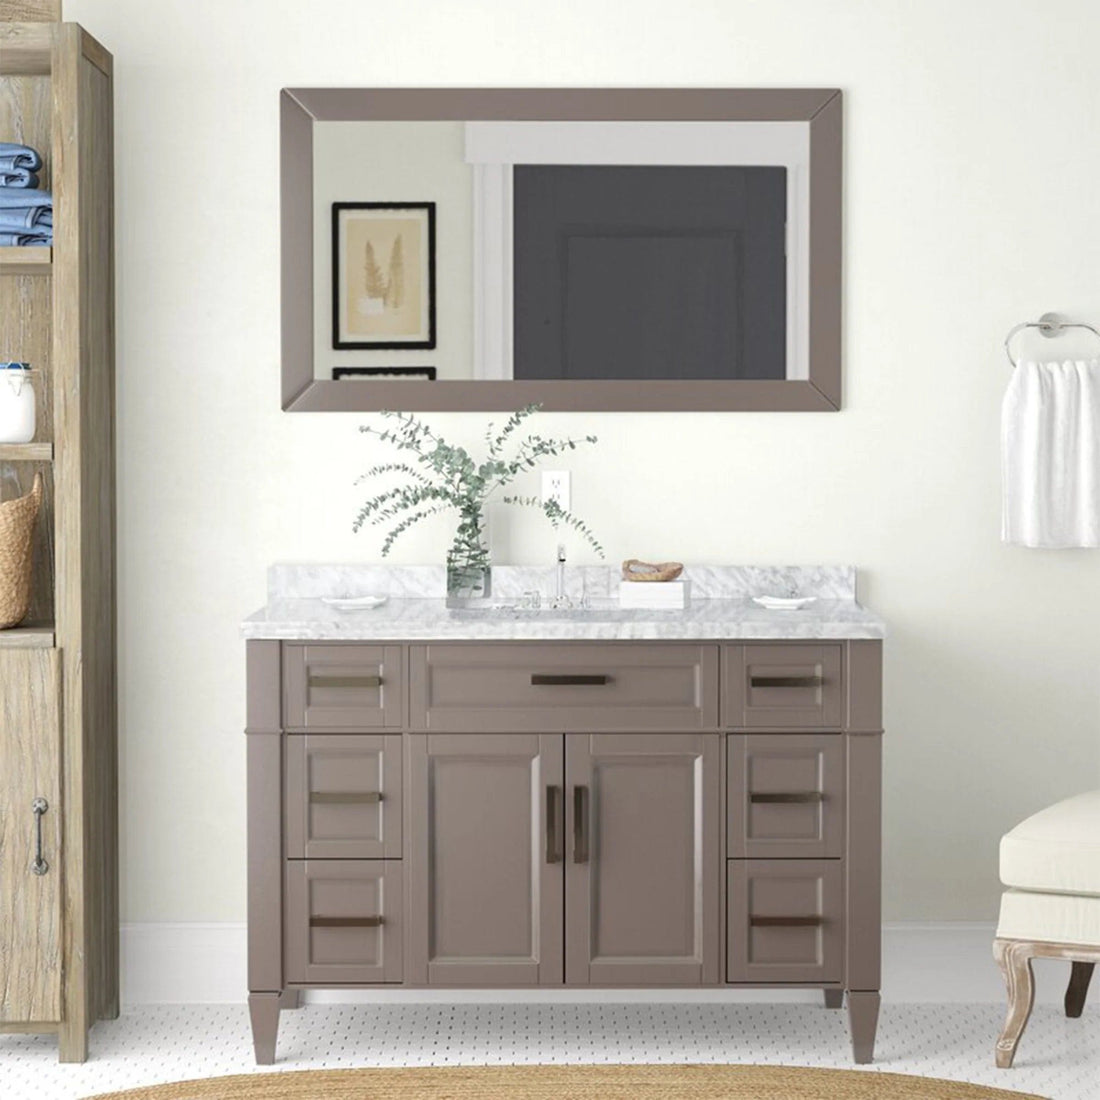 48 in. Single Sink Bathroom Vanity Set in Gray,Carrara Marble Stone Top